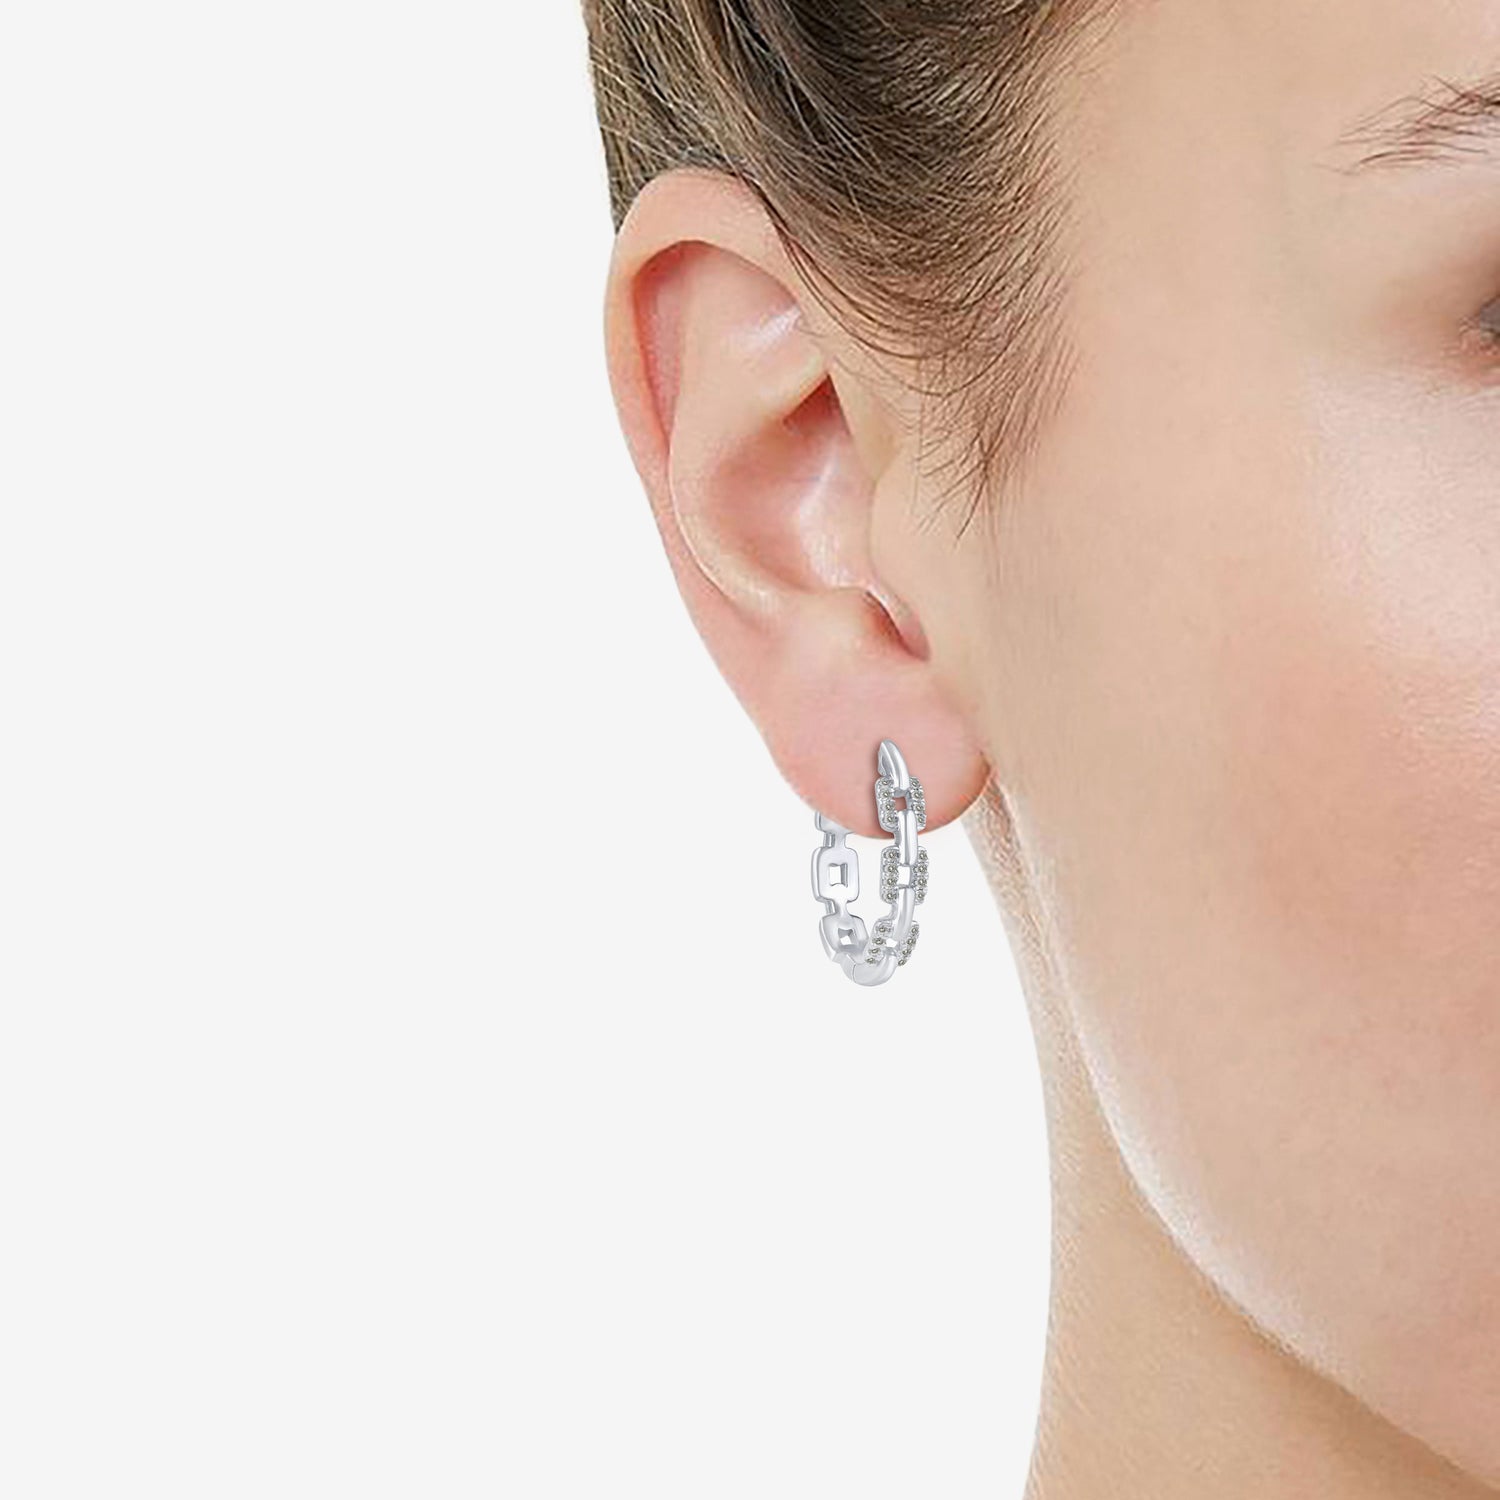 1 Pair) Women's Gold Hoop Earrings 925 Sterling Silver